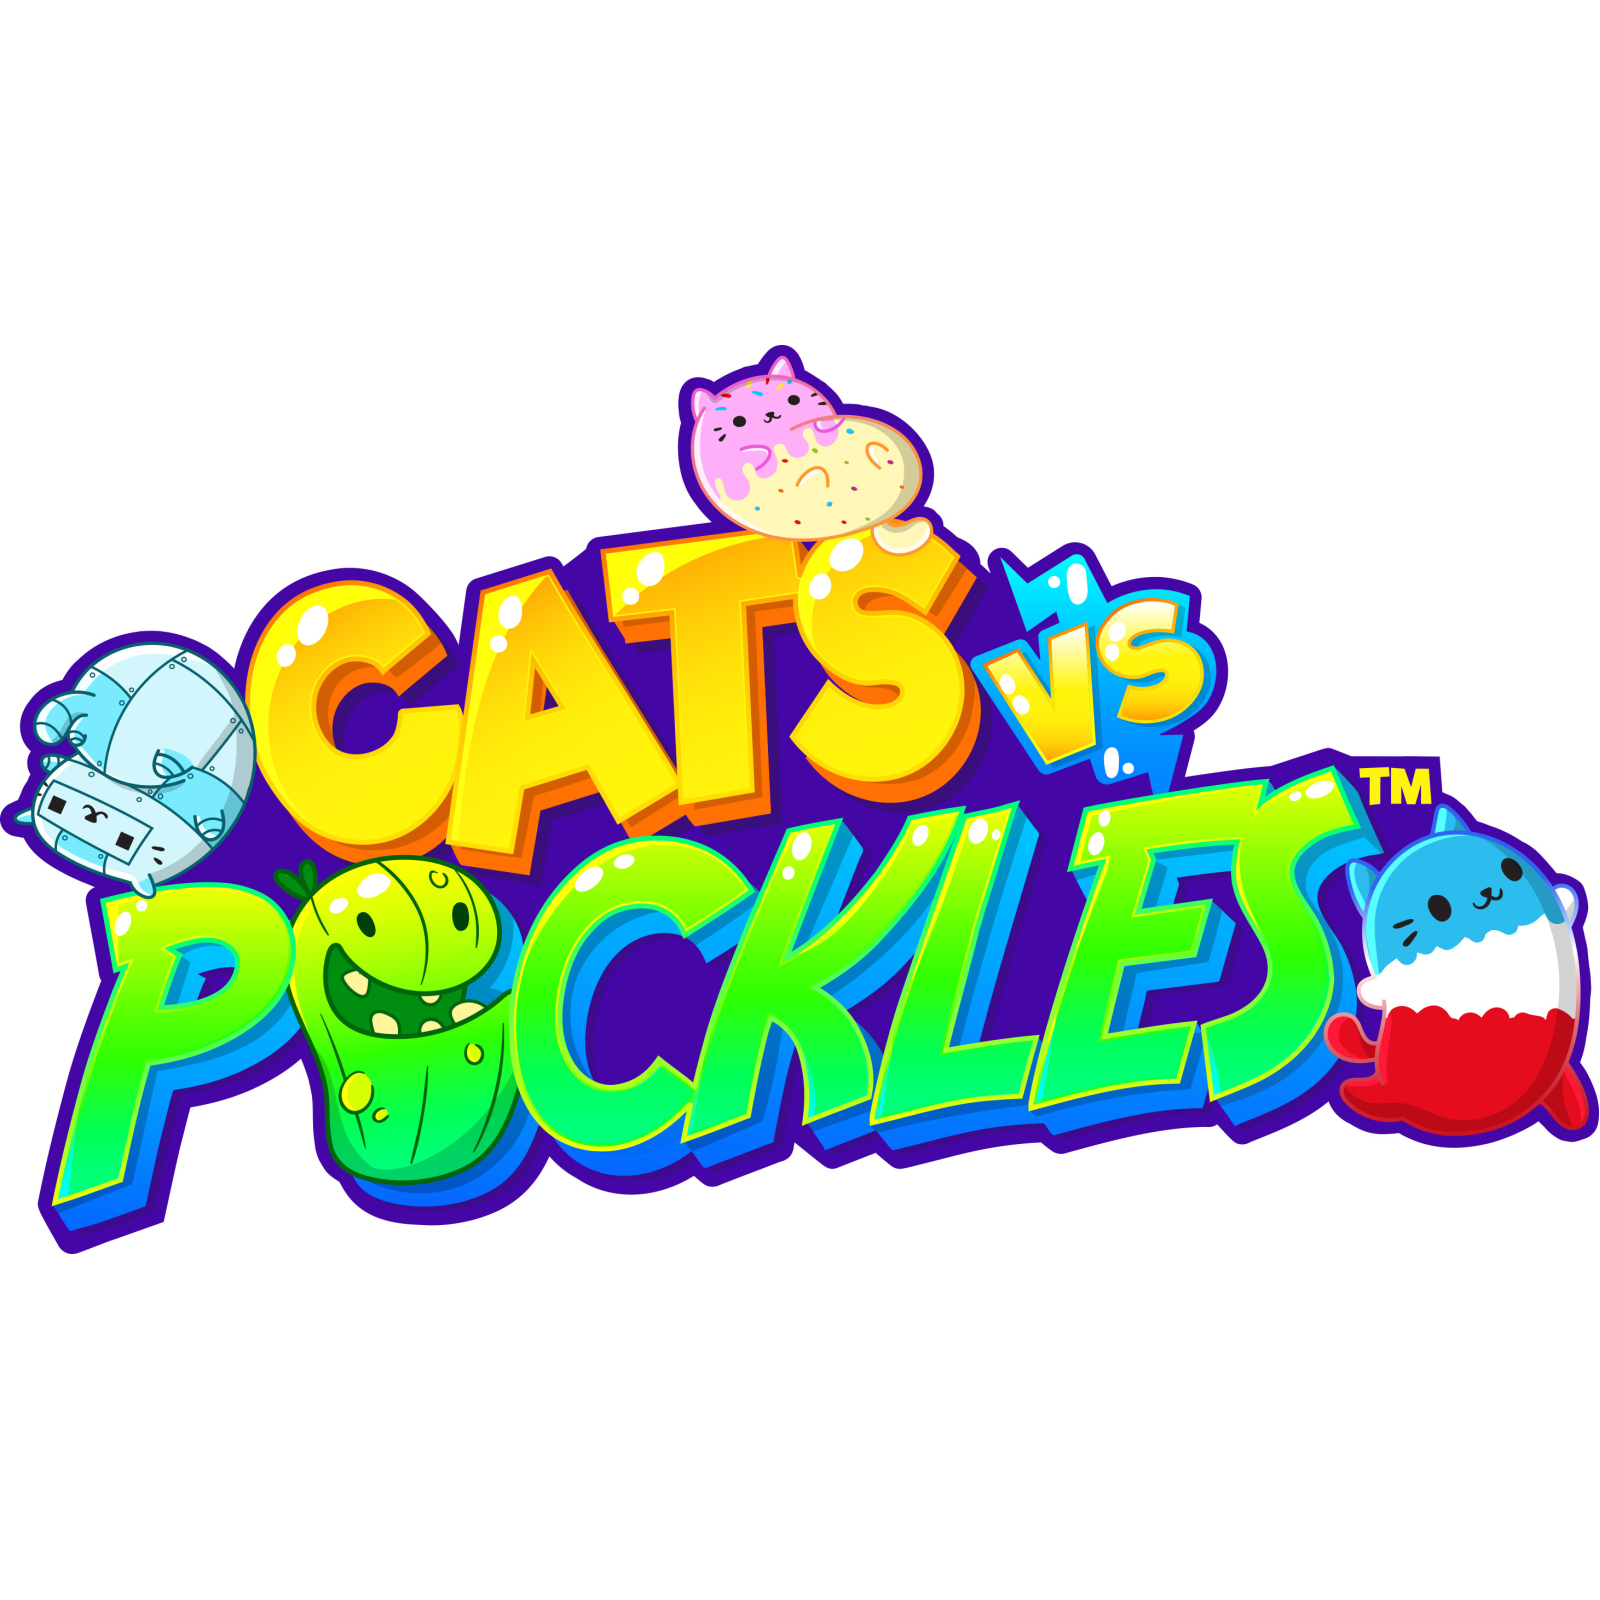 Мягкая игрушка Cats vs Pickles Пижамка (CVP1002PM-341) изображение 4